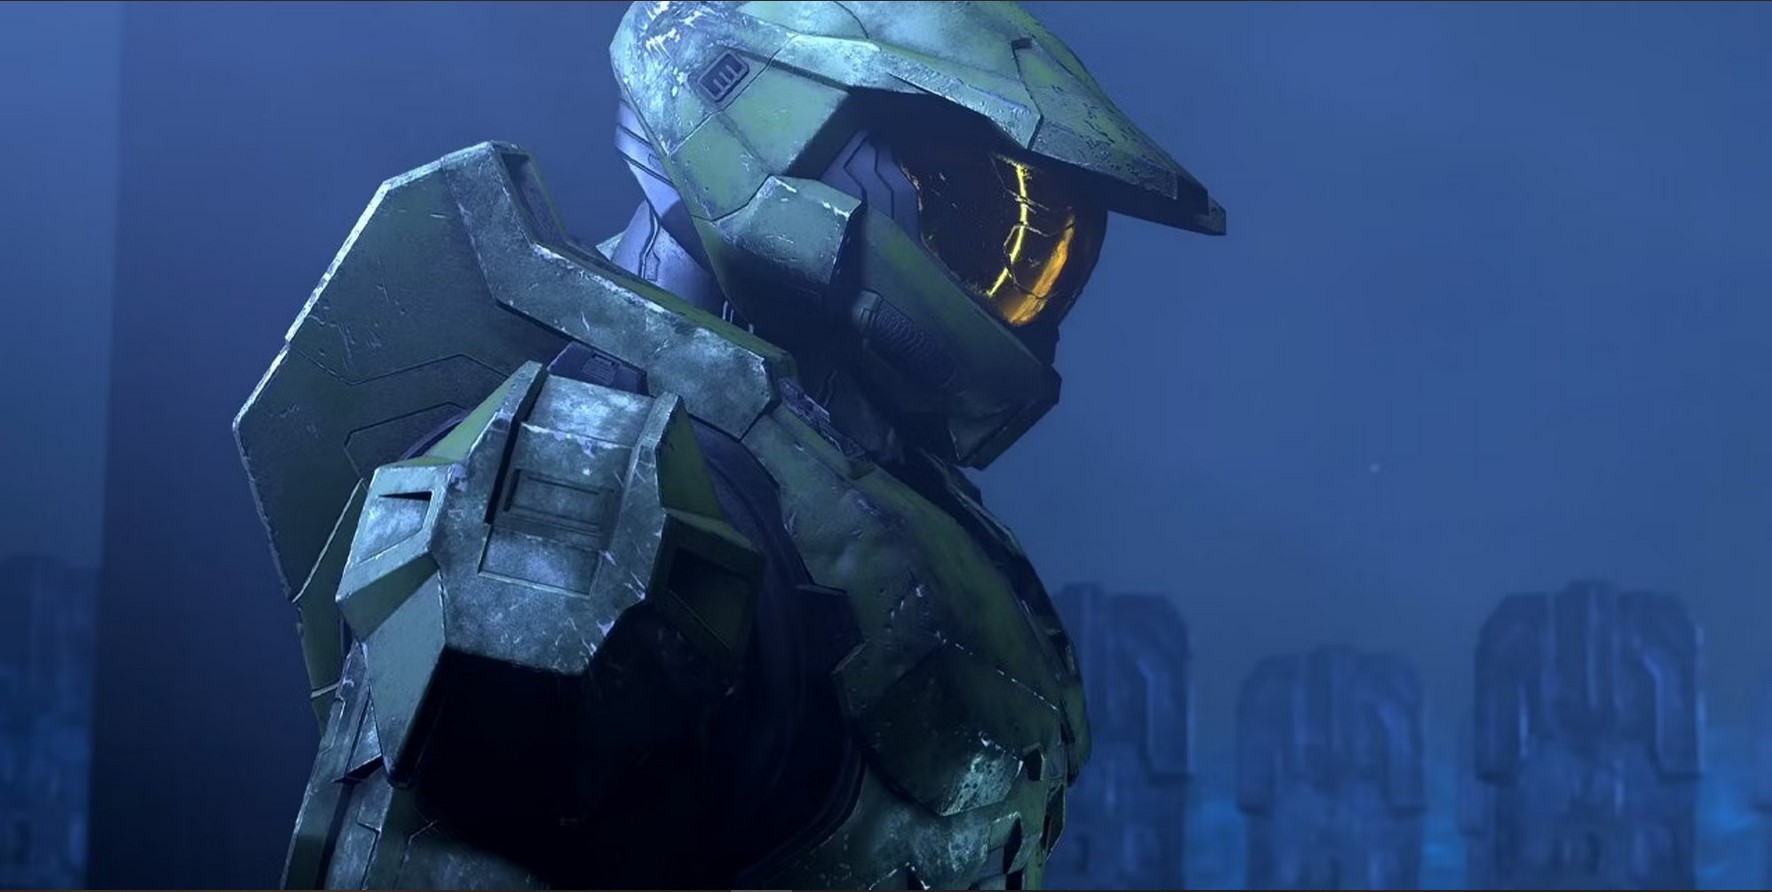 Halo - Absente du Xbox Game Showcase, quel avenir pour la franchise ?